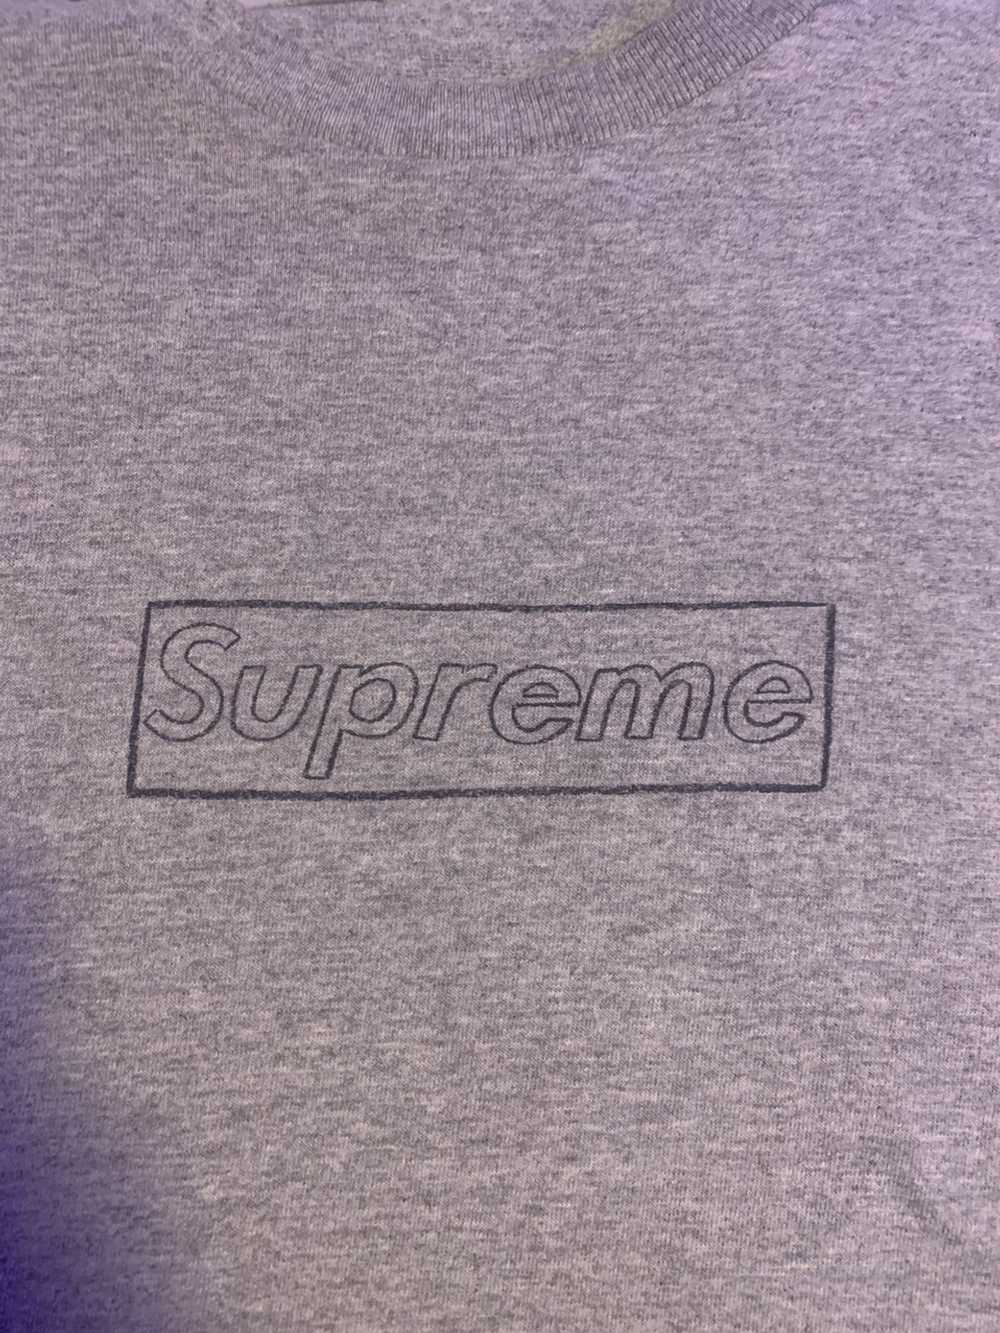 Supreme Supreme X Kaws Box Logo Tee Grey Size Med… - image 2